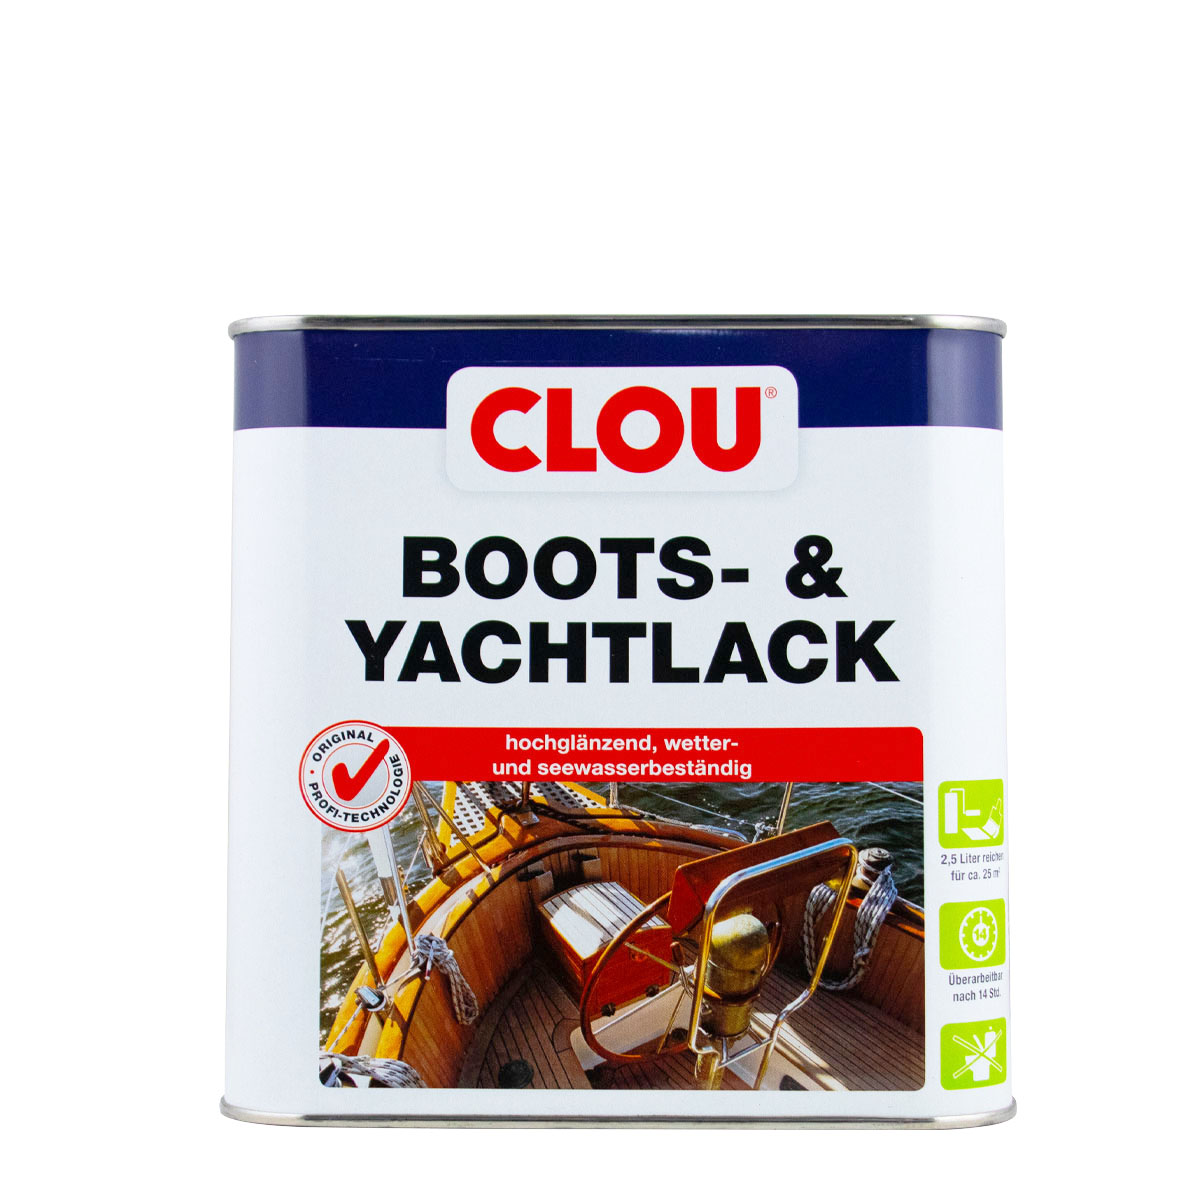 Clou_Boots_Yachtlack_2,5L_gross